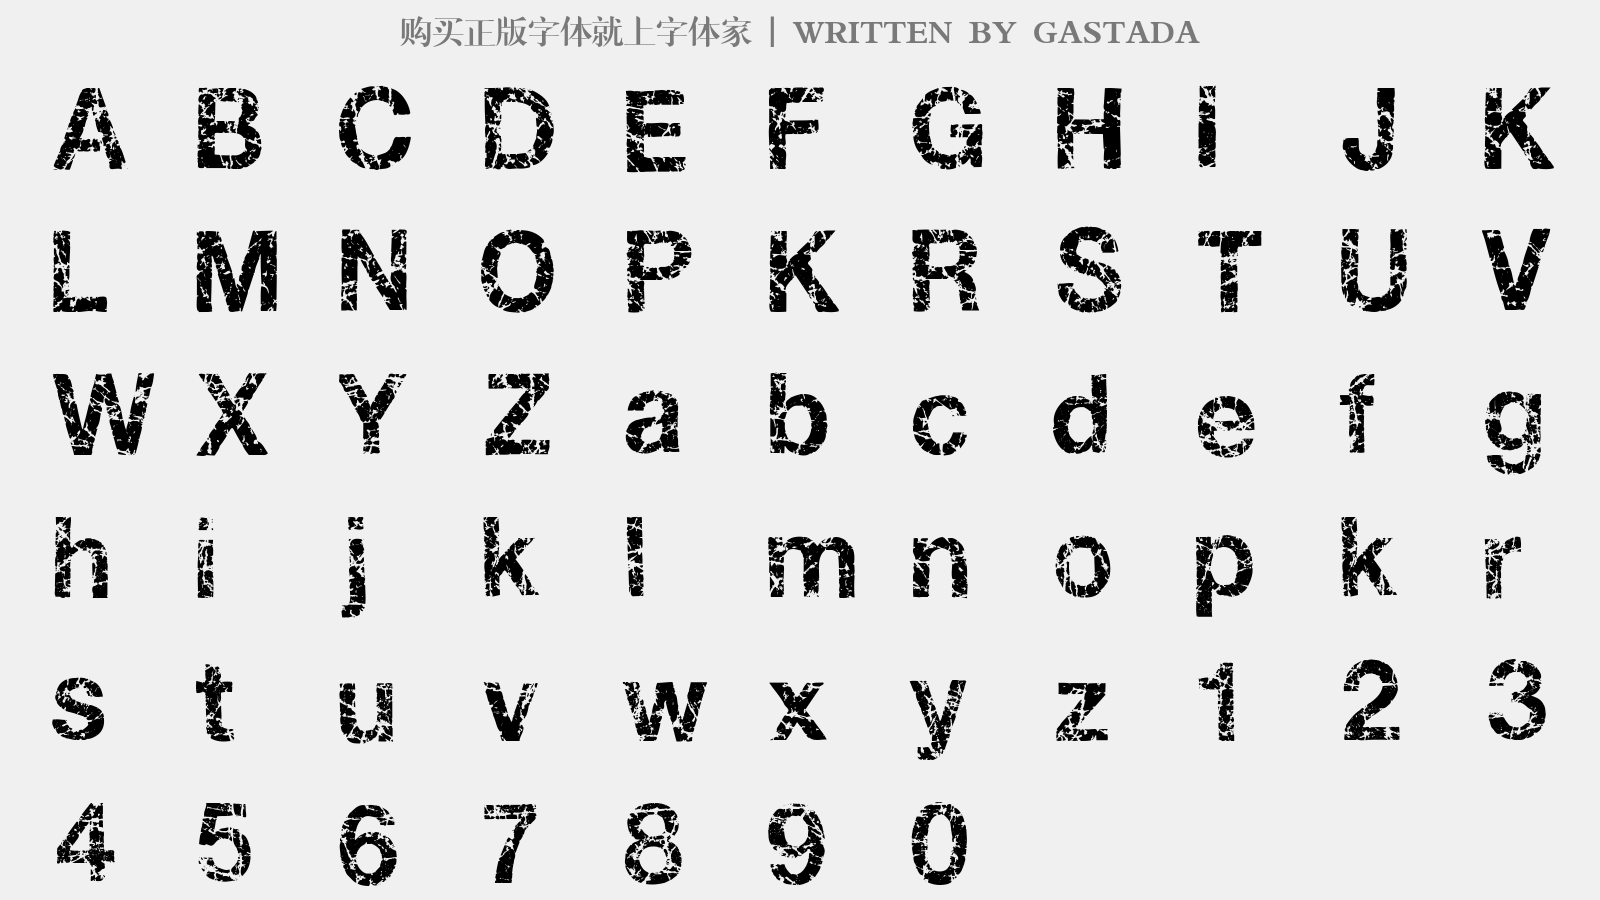 GASTADA - 大写字母/小写字母/数字